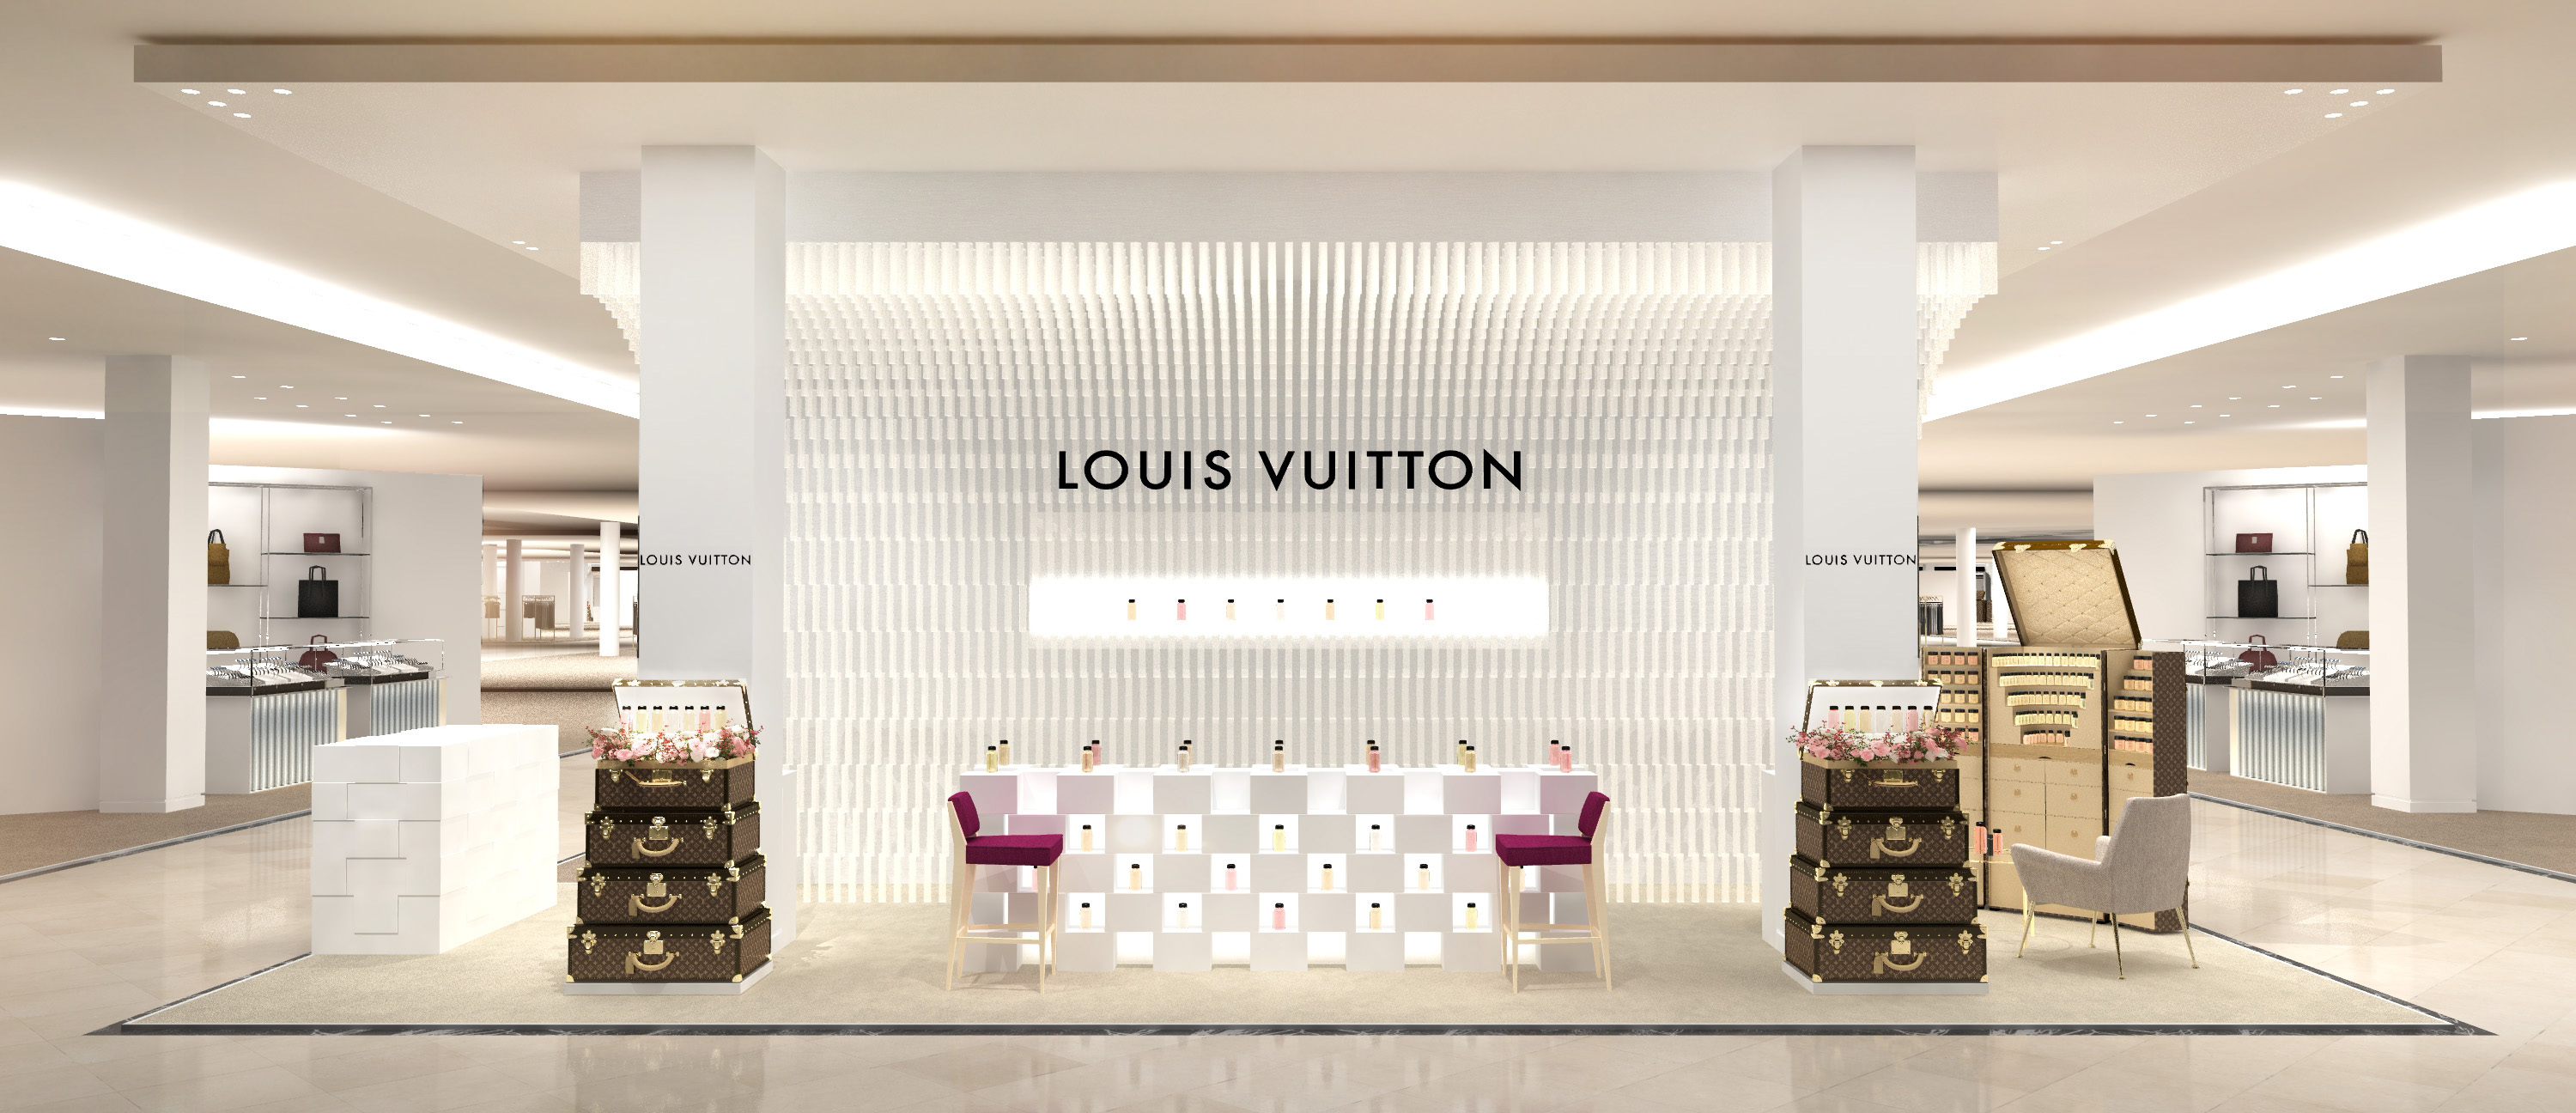 Louis Vuitton Paris Printemps Haussmann store, France